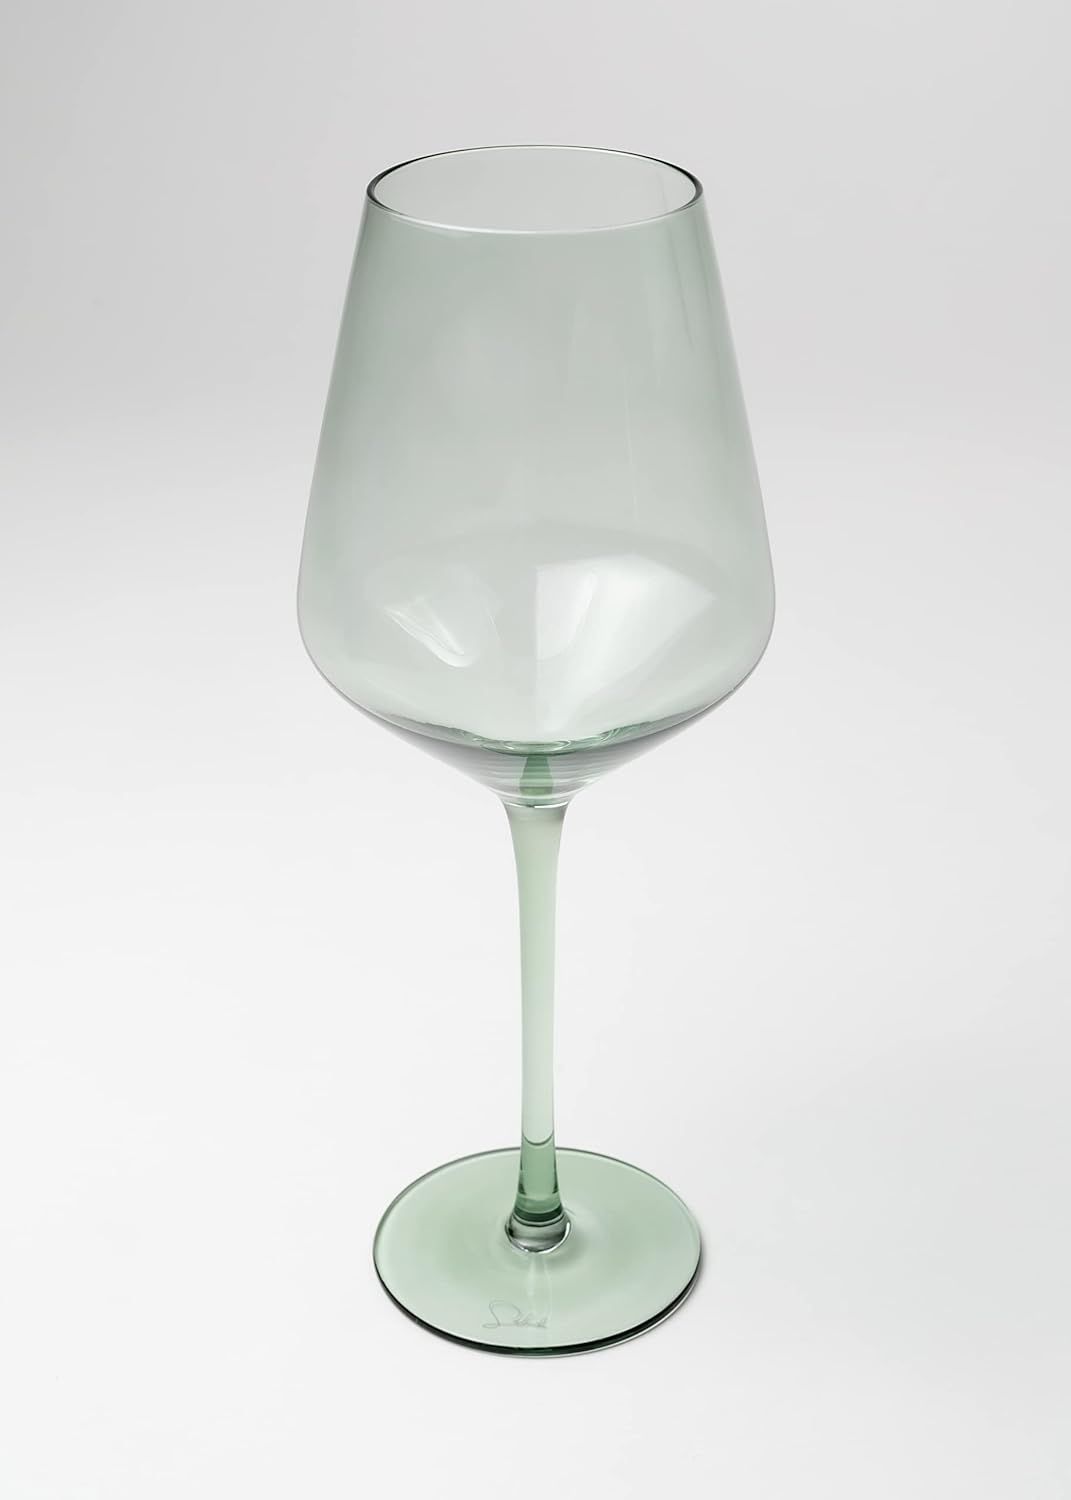 Saludi Original Light Blue Sea Wine Glasses, 16.5oz (Set of 6) Stemmed Single Color Teal Green Se... | Amazon (US)